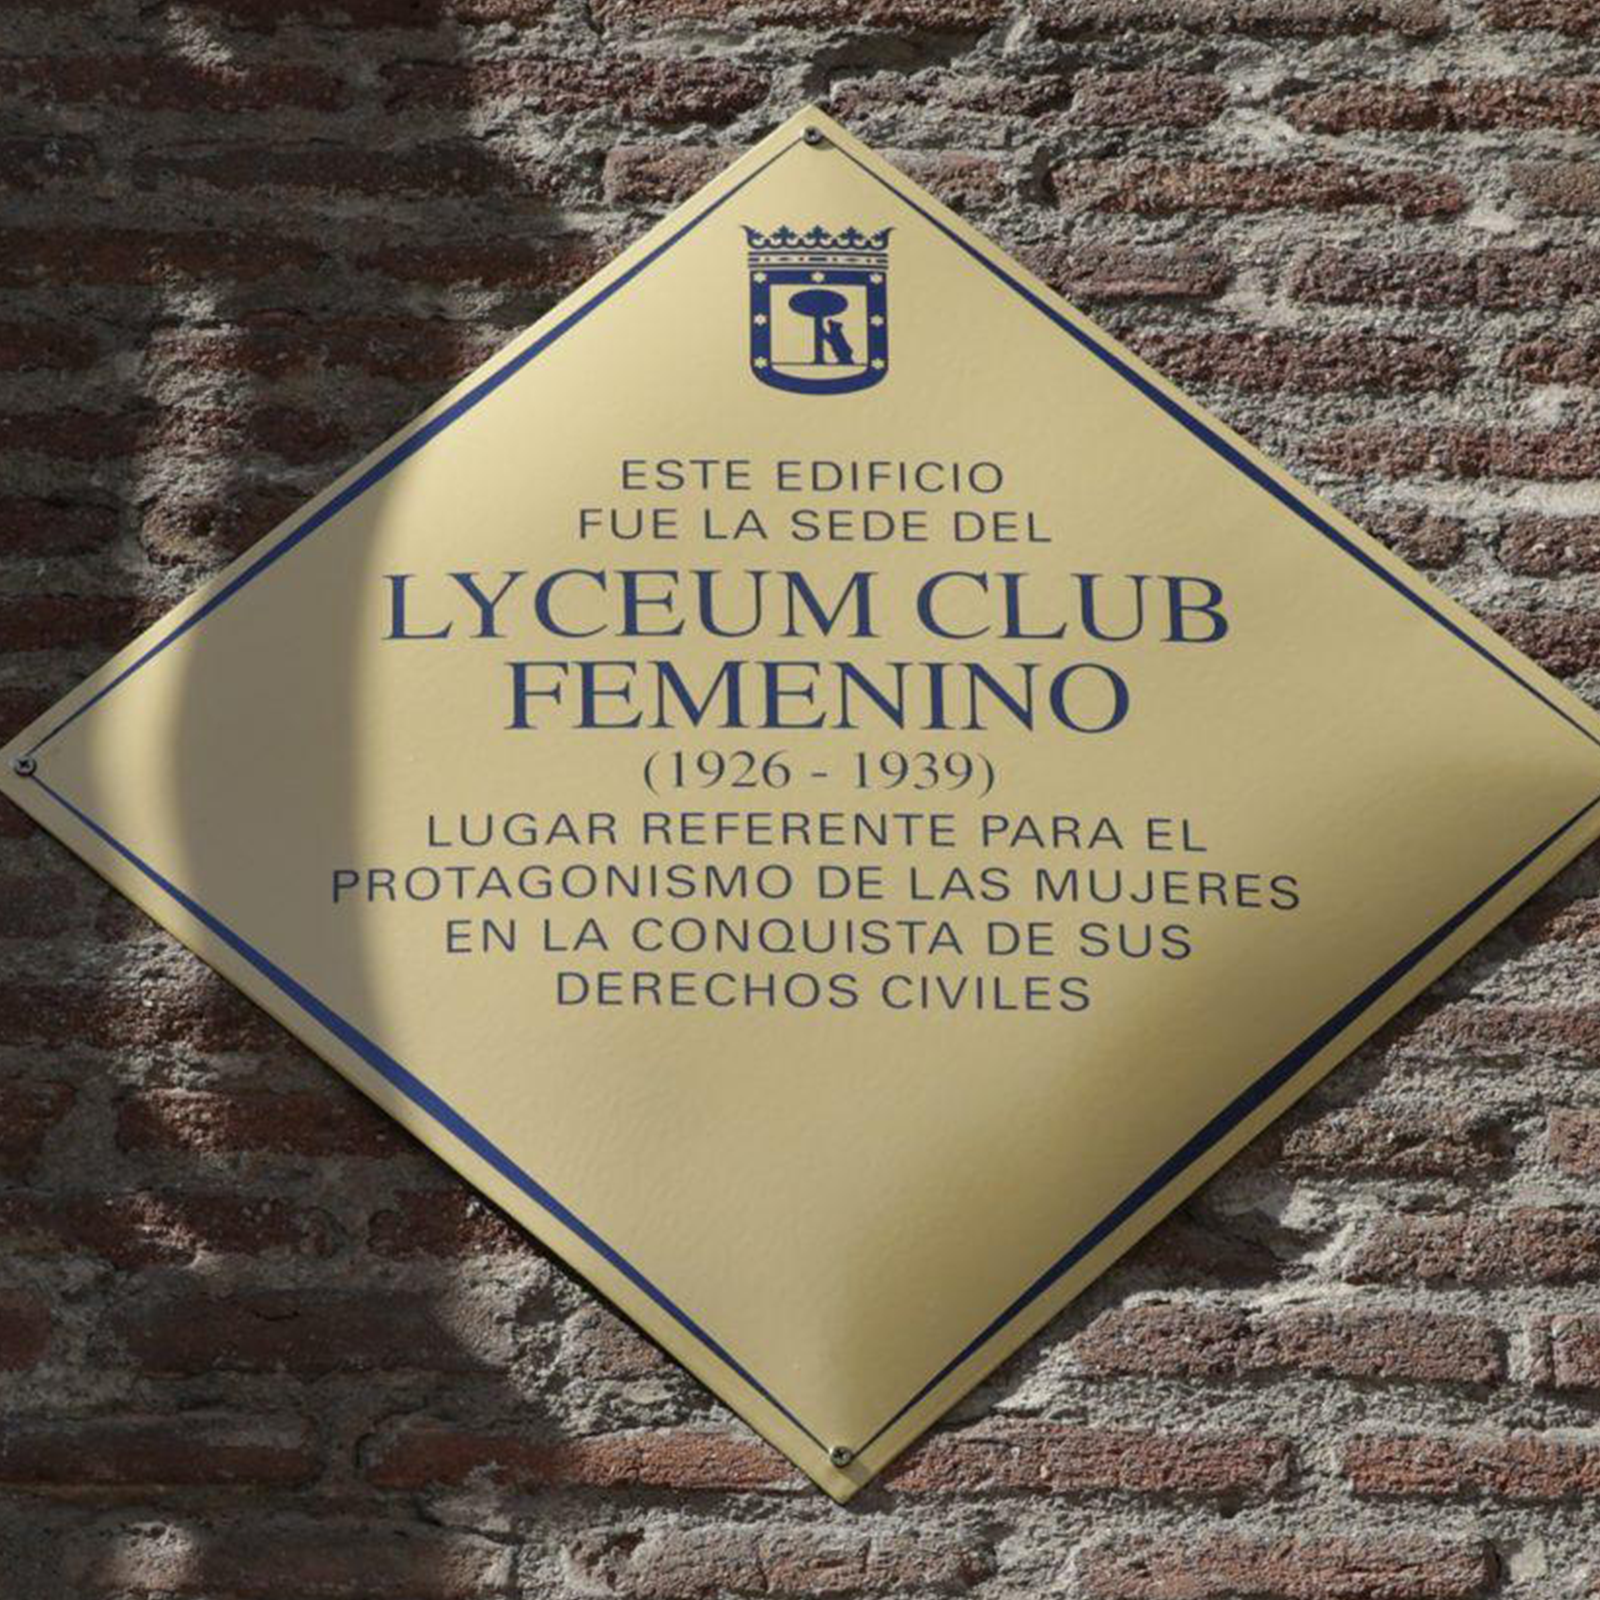 Hablemos de historia en RTVE - El Lyceum Club Femenino, una apuesta por el futuro